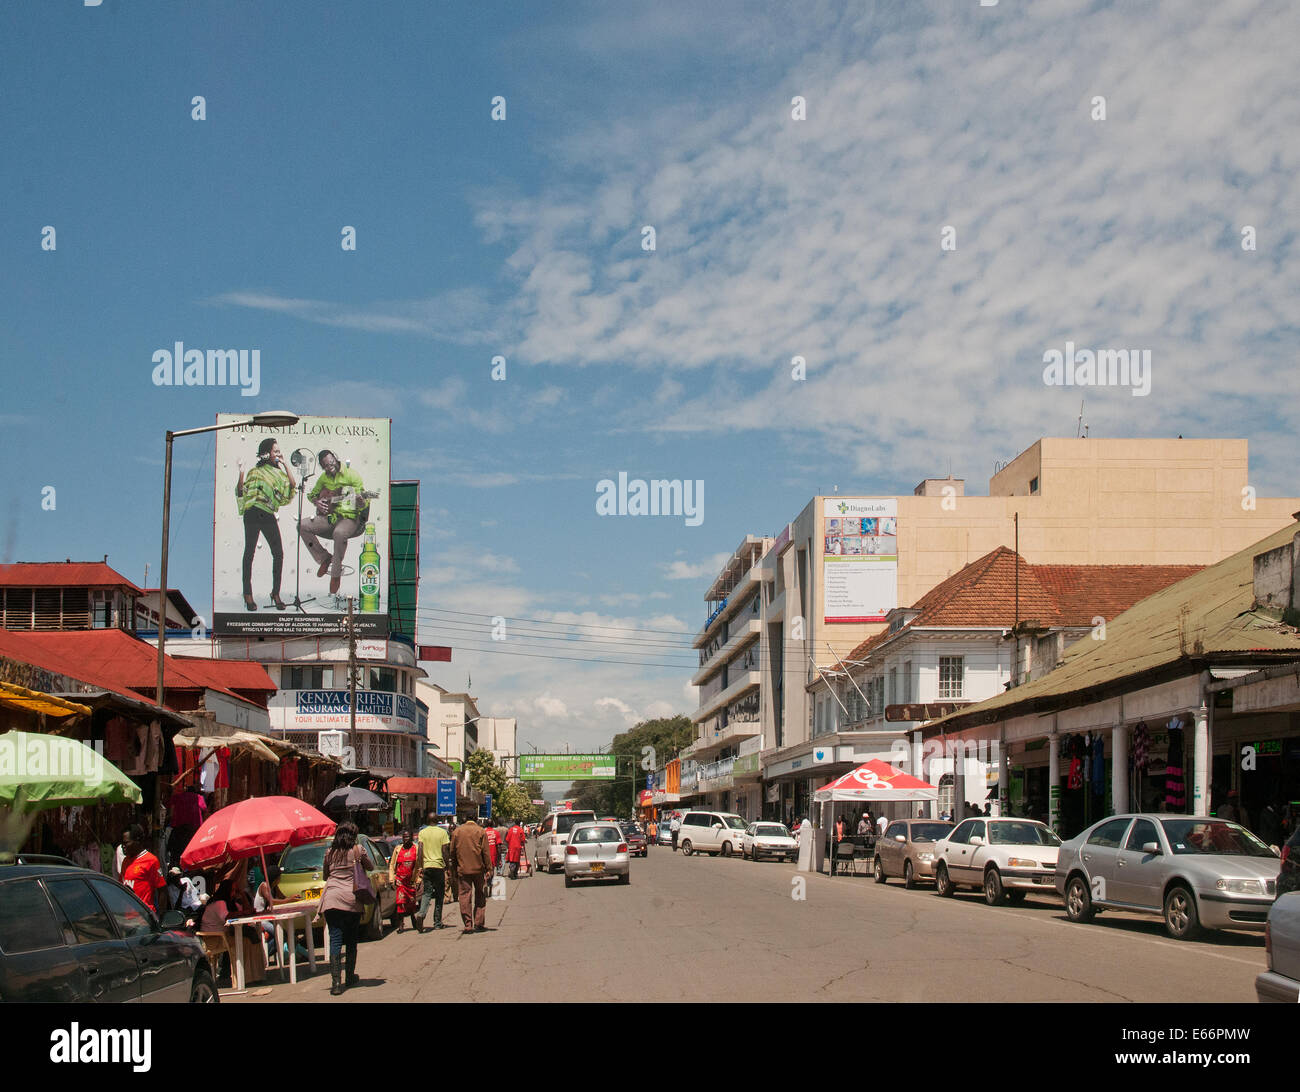 Personnes et de la circulation sur l'avenue Kenyatta Nakuru Kenya Afrique de l'Est avec des panneaux publicitaires et des boutiques modernes vieux fashoned KENYAT Banque D'Images